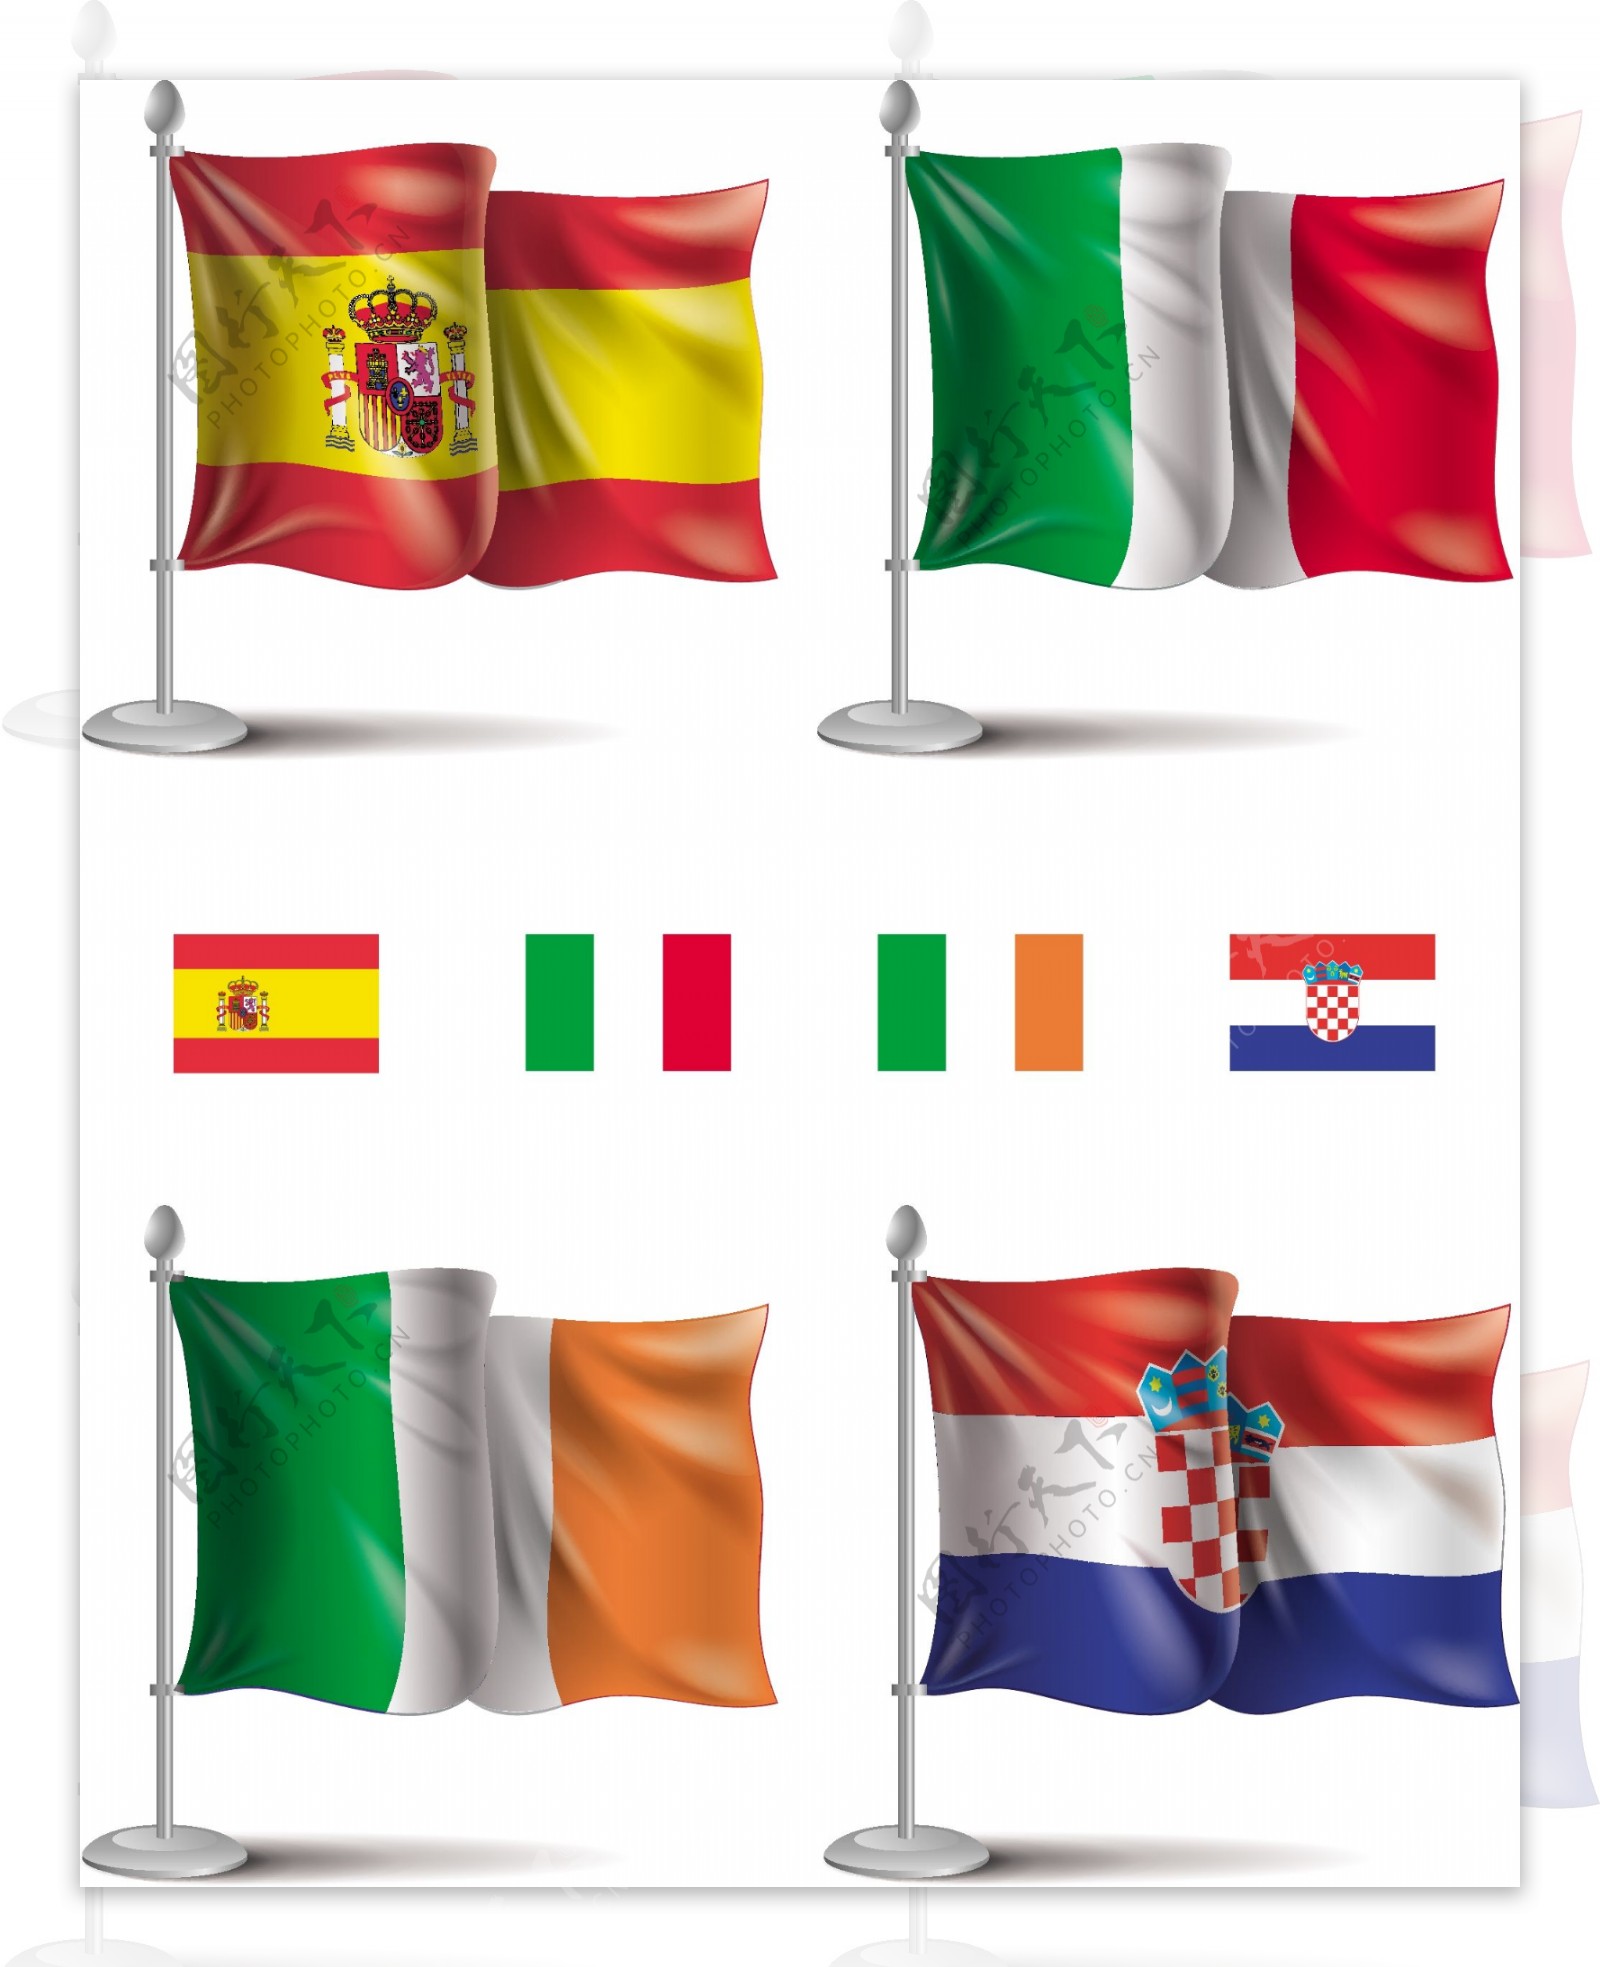 多个国家旗帜欧洲杯足球矢量素材